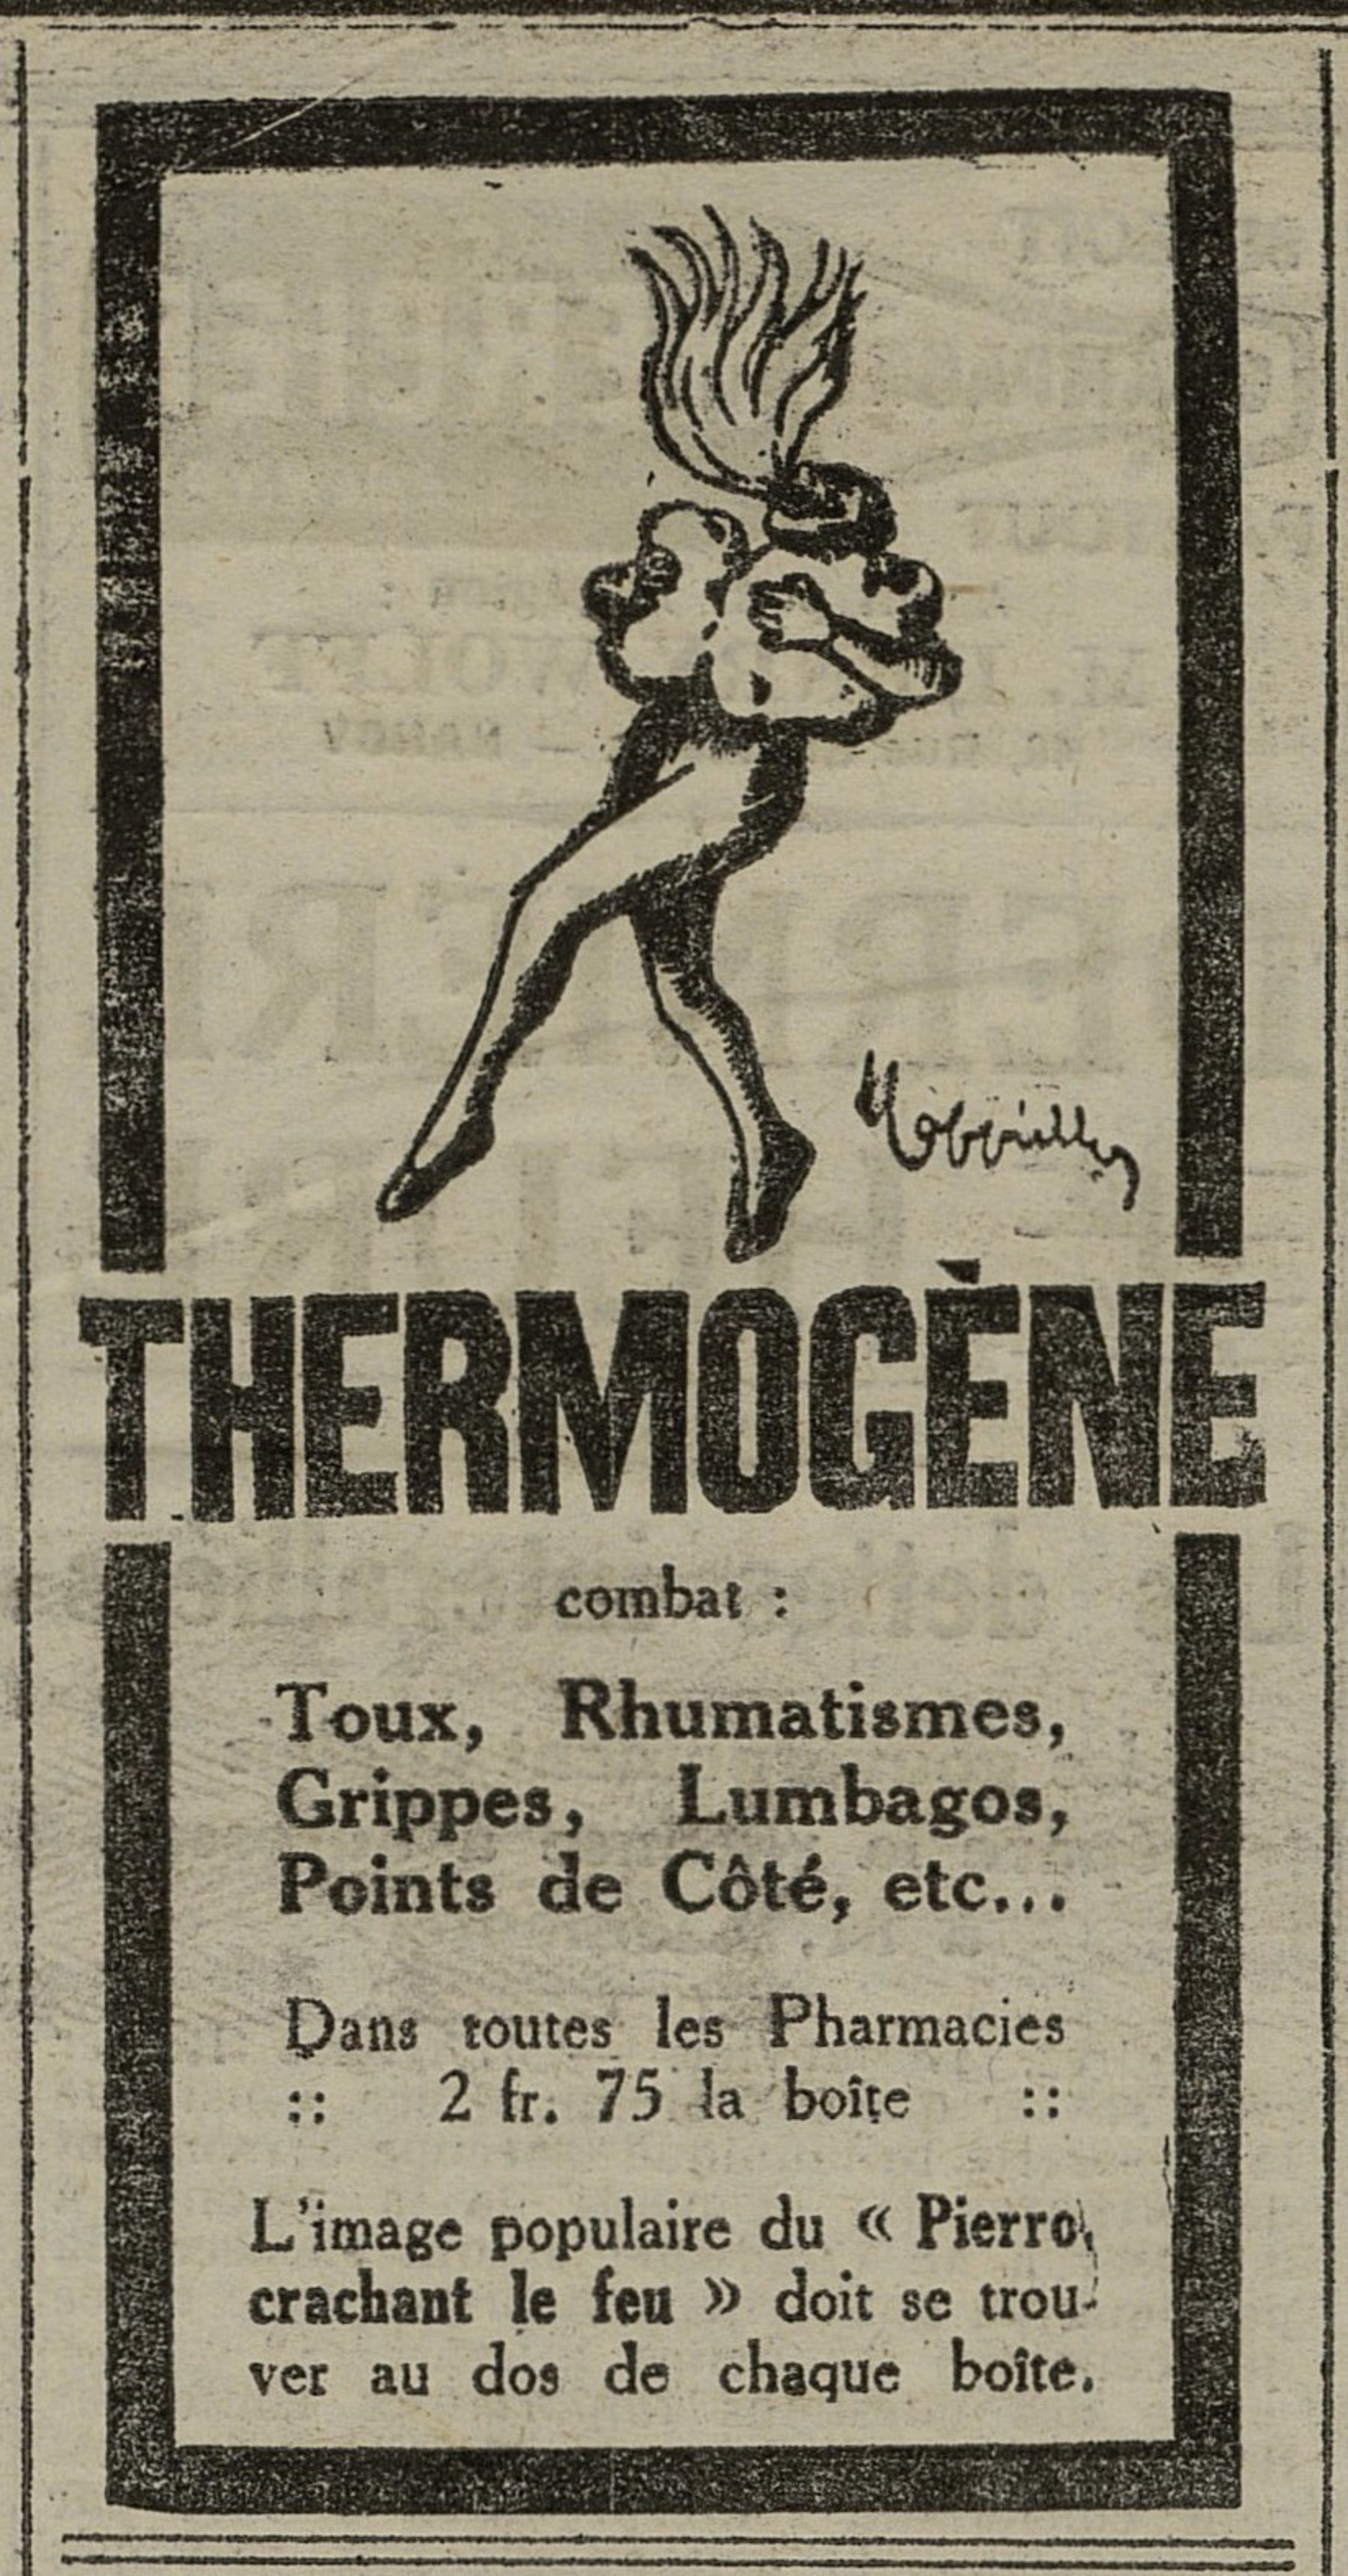 Contenu du Thermogène